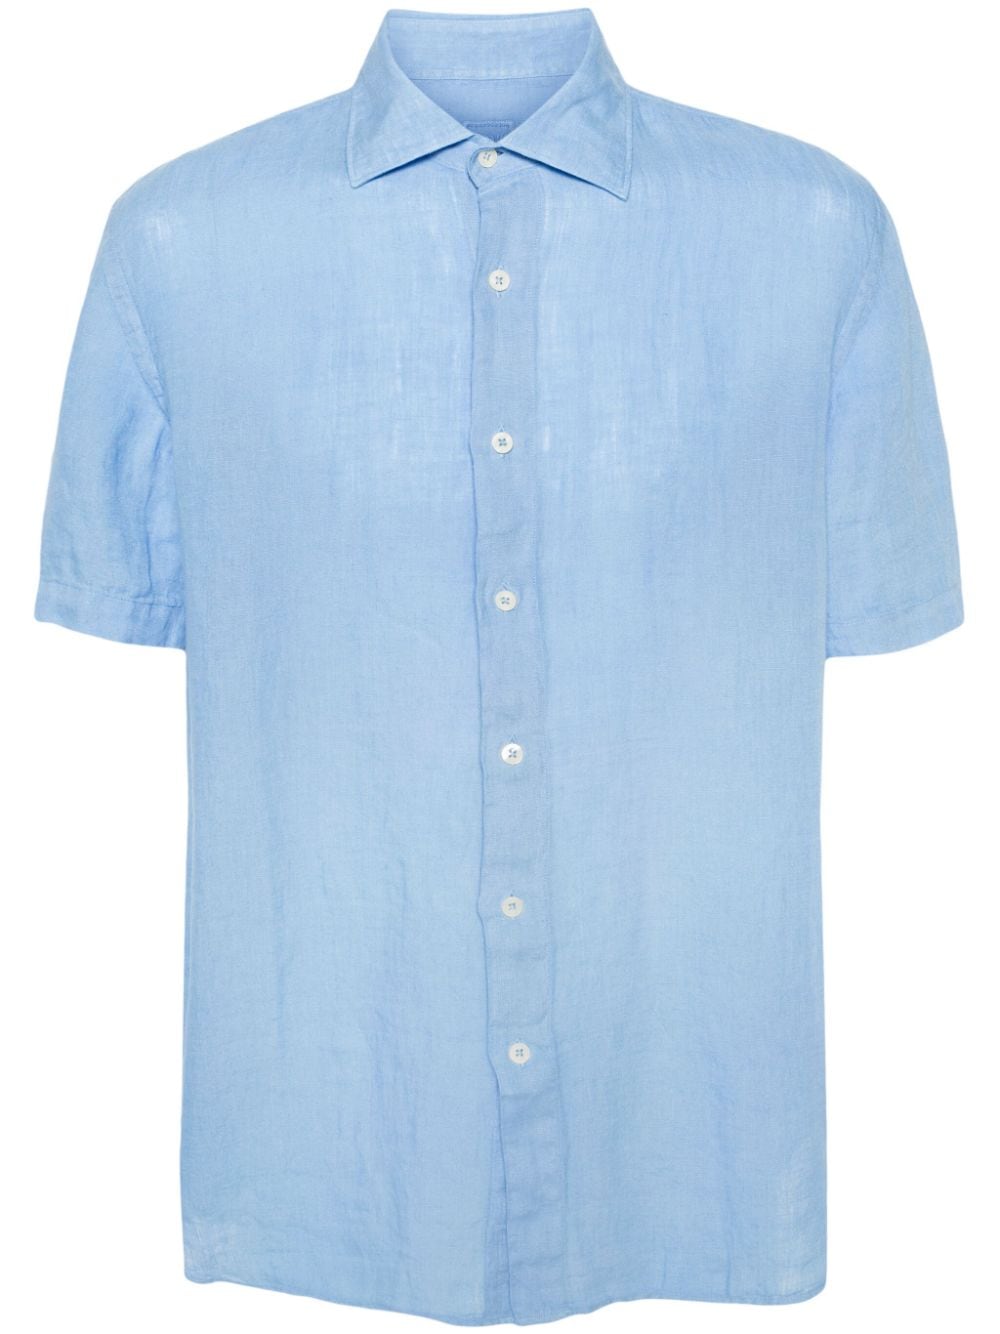 120% Lino Linnen overhemd met korte mouwen Blauw